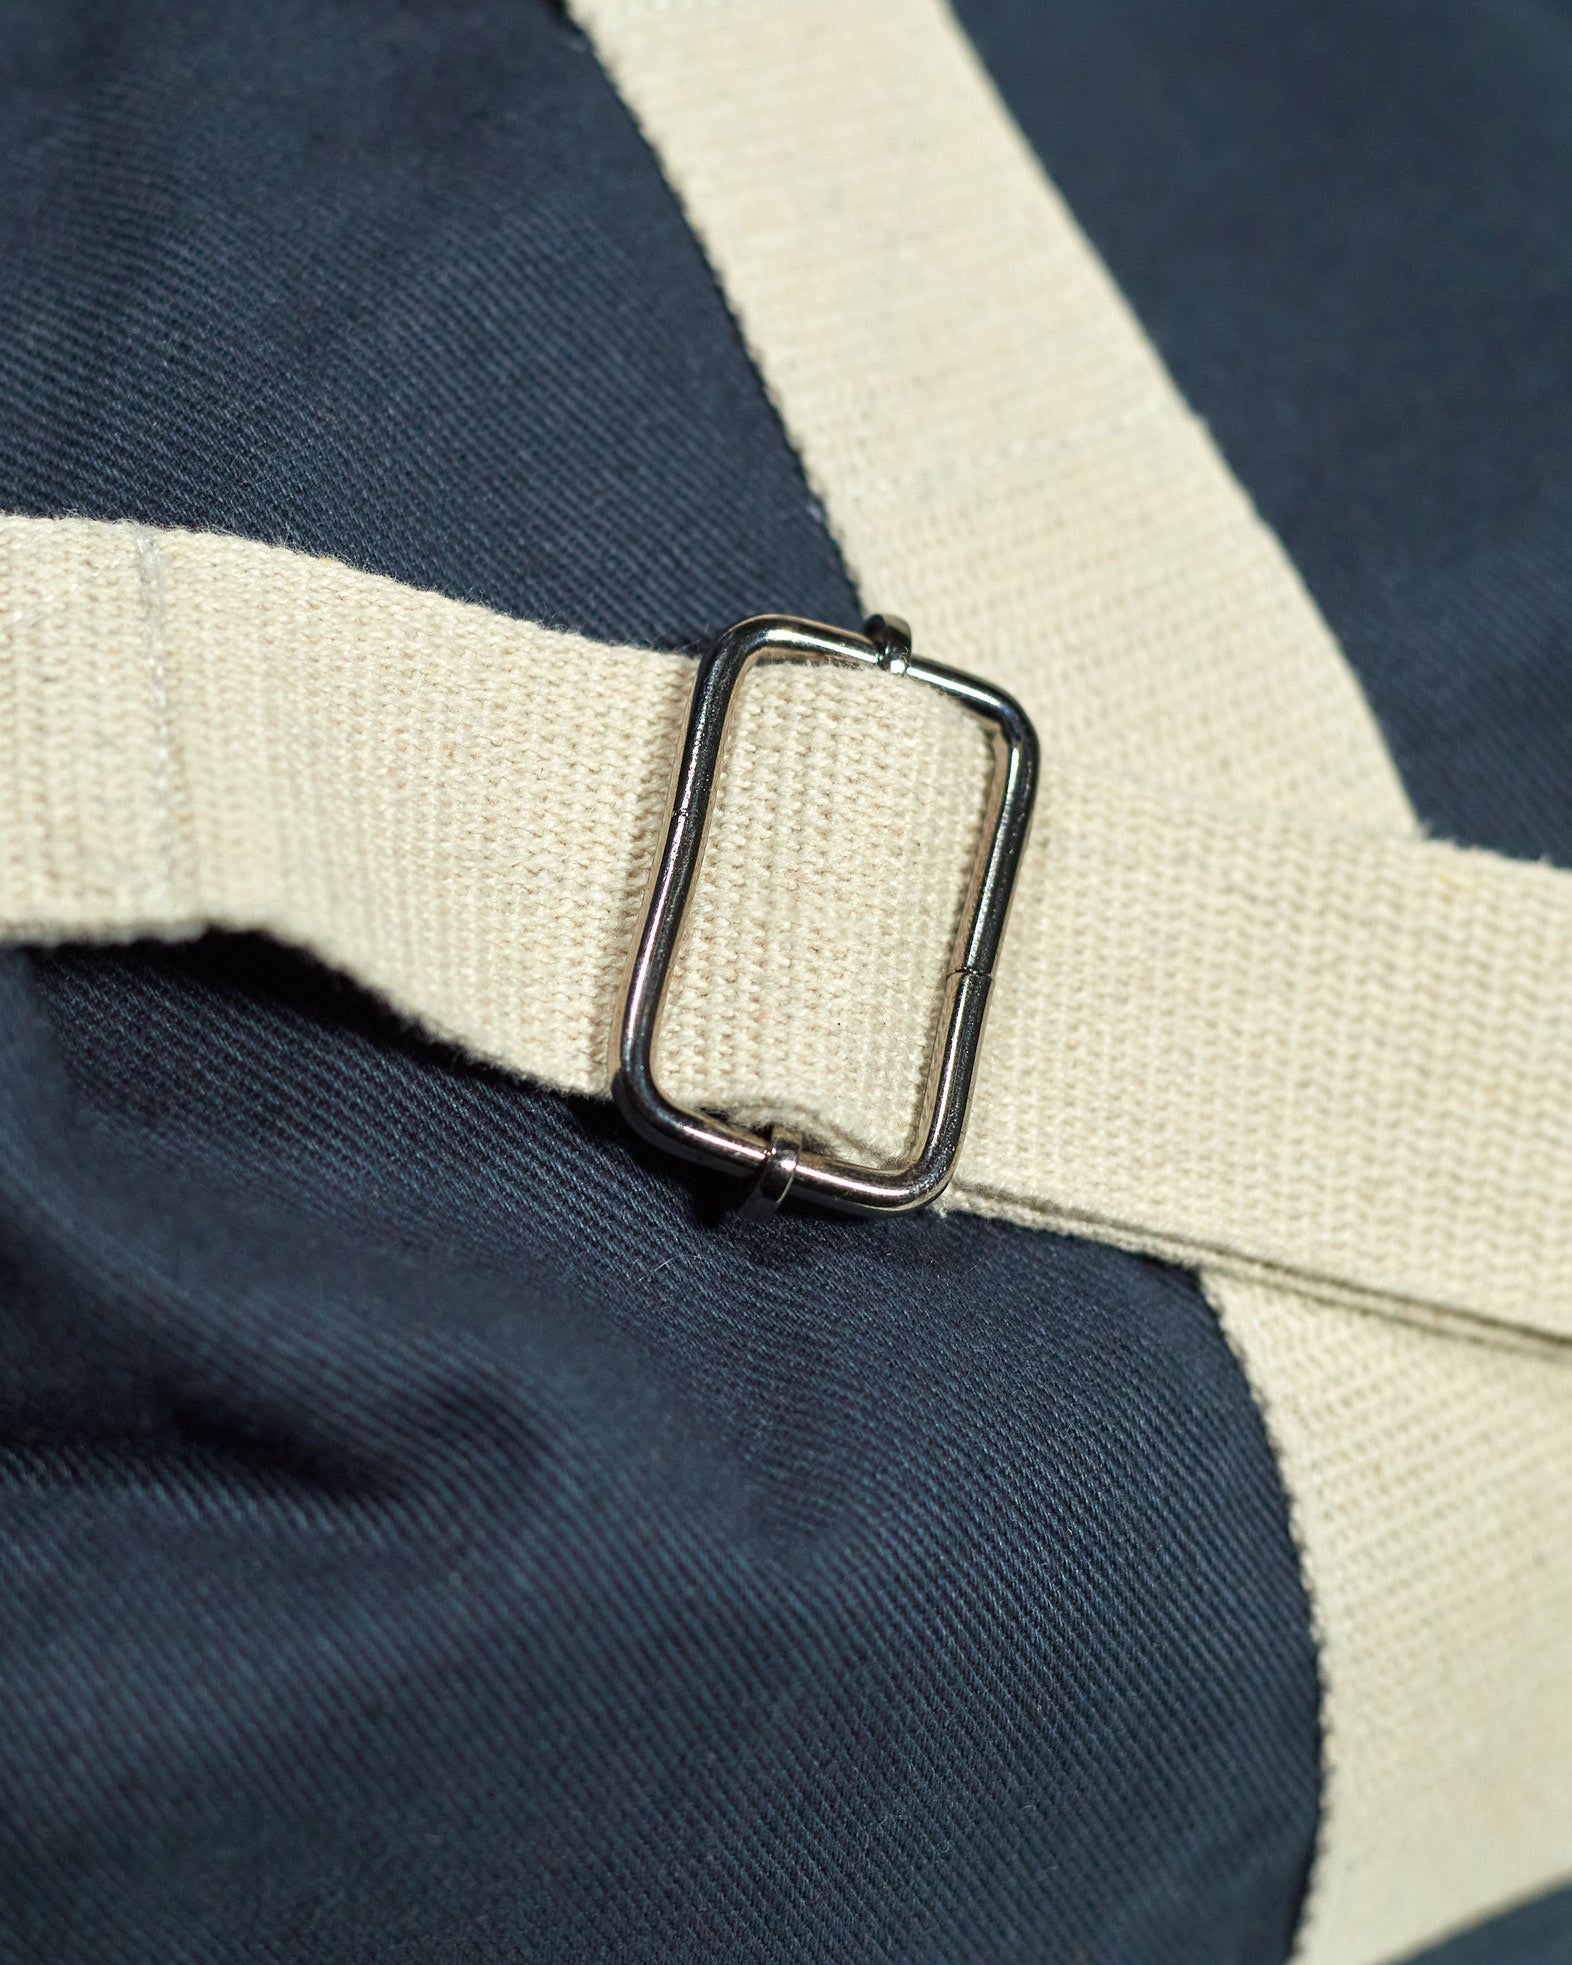 Focus on adjustable, extra strong natural cotton webbing shoulder strap of Uskees #0403 barrel bag.